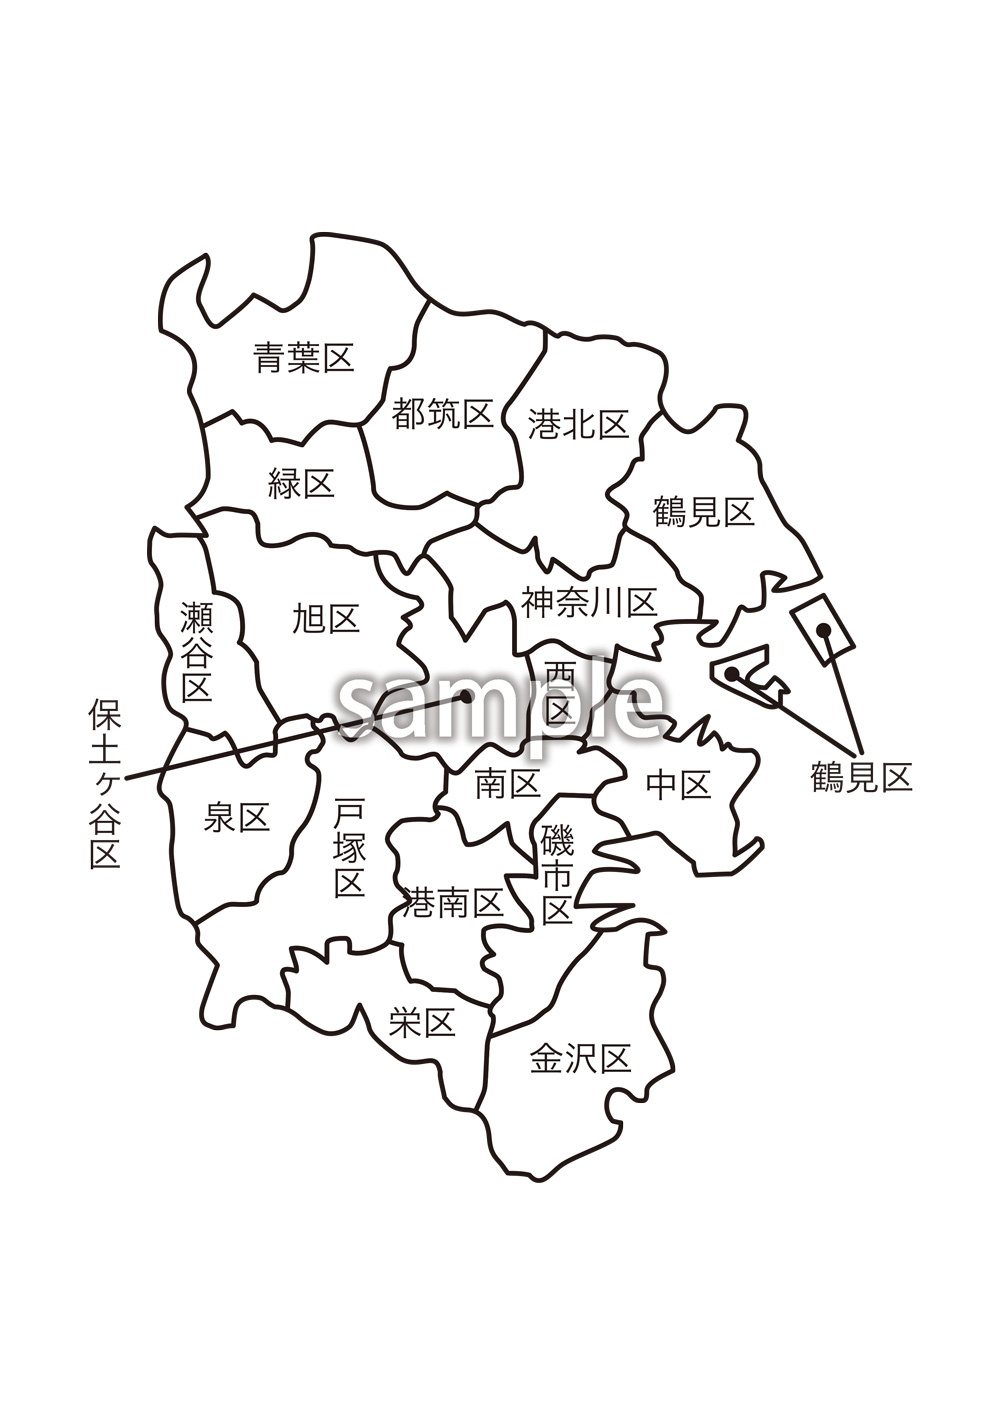 神奈川県横浜市区名入り地図